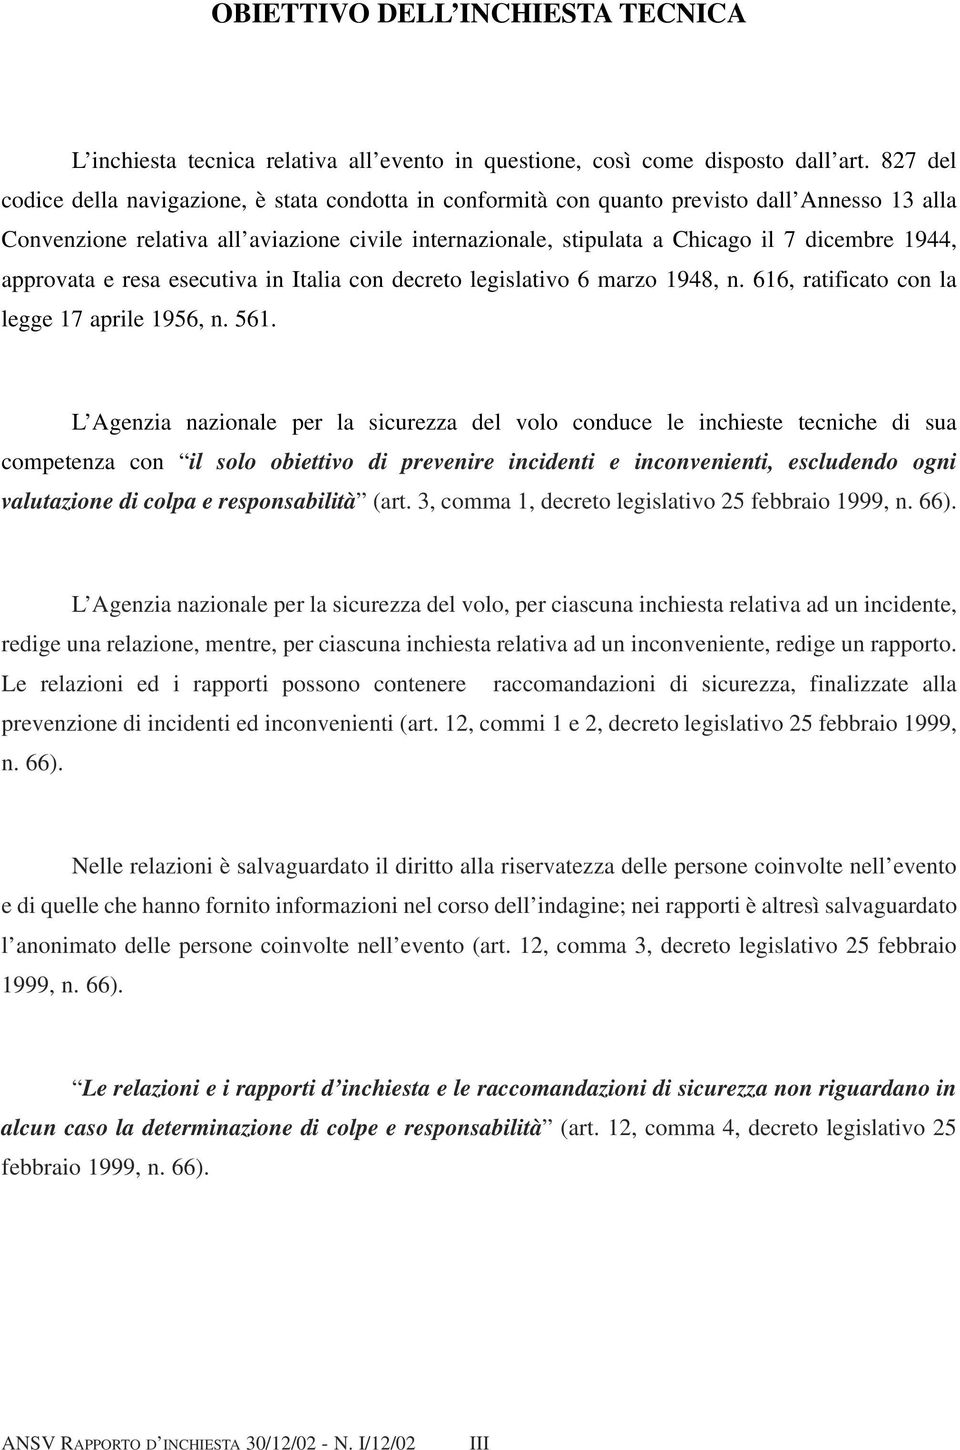 1944, approvata e resa esecutiva in Italia con decreto legislativo 6 marzo 1948, n. 616, ratificato con la legge 17 aprile 1956, n. 561.